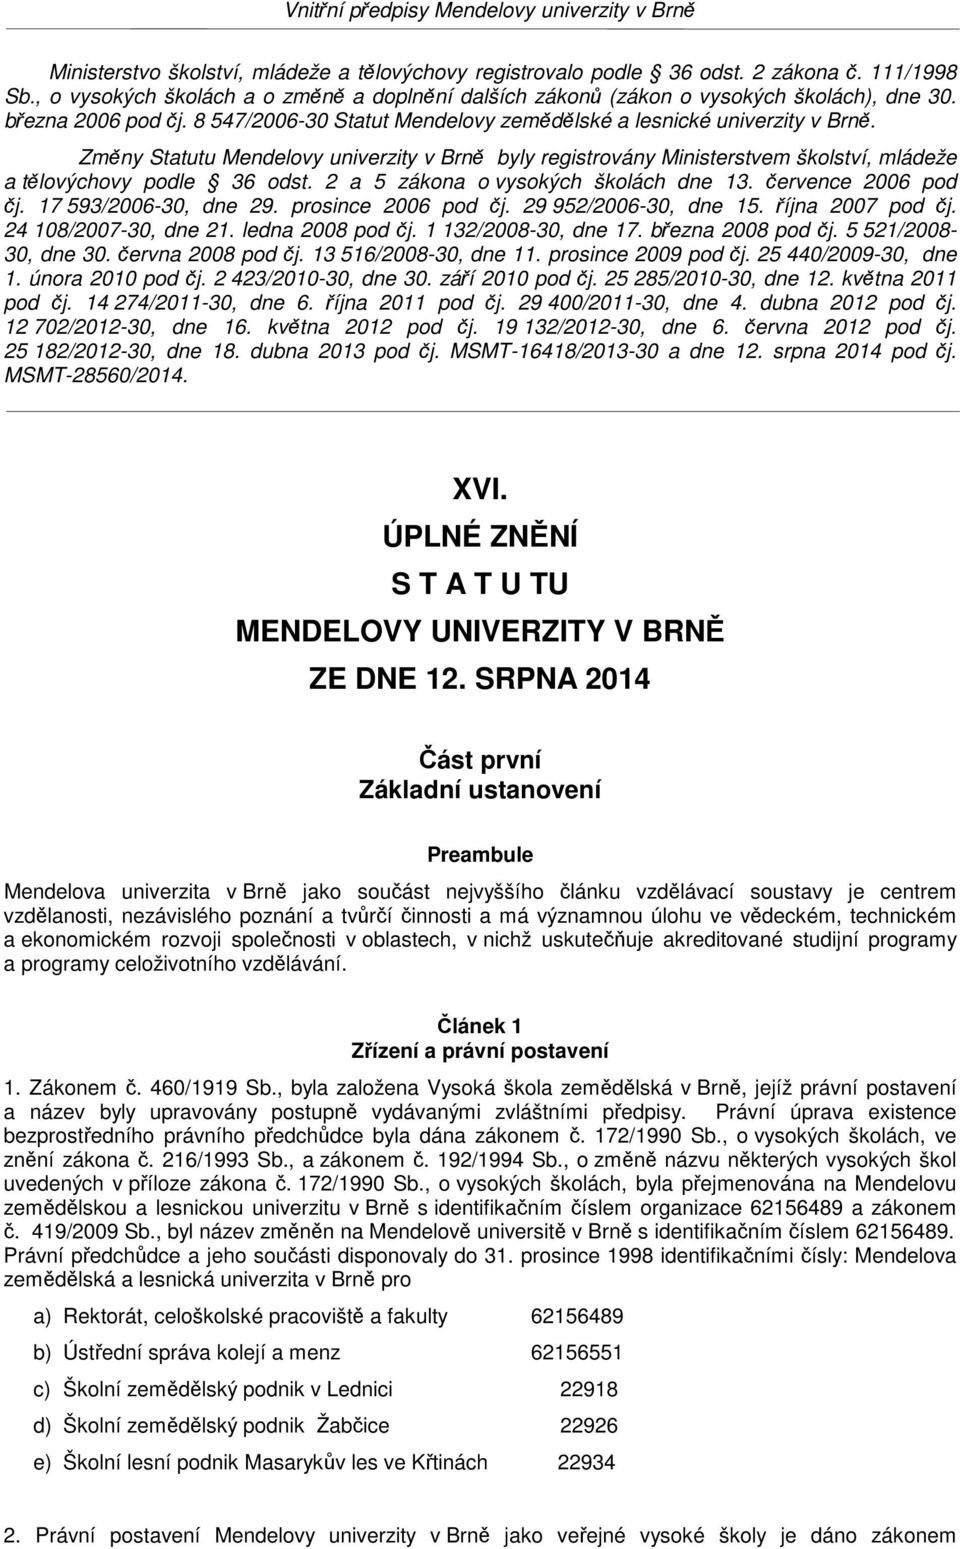 Změny Statutu Mendelovy univerzity v Brně byly registrovány Ministerstvem školství, mládeže a tělovýchovy podle 36 odst. 2 a 5 zákona o vysokých školách dne 13. července 2006 pod čj.